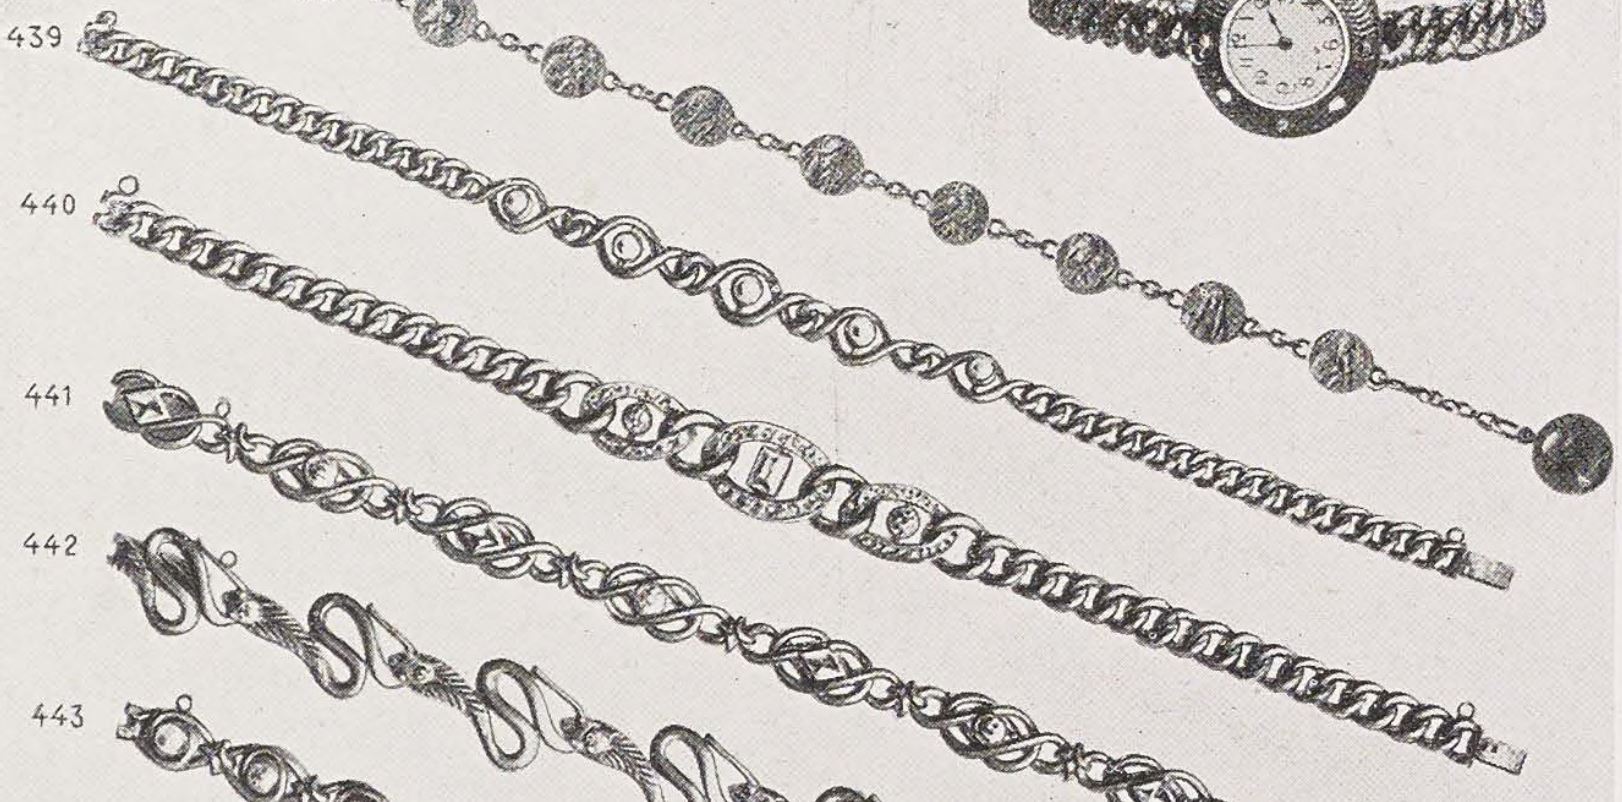 bracelets-1905-circa-gross.JPG